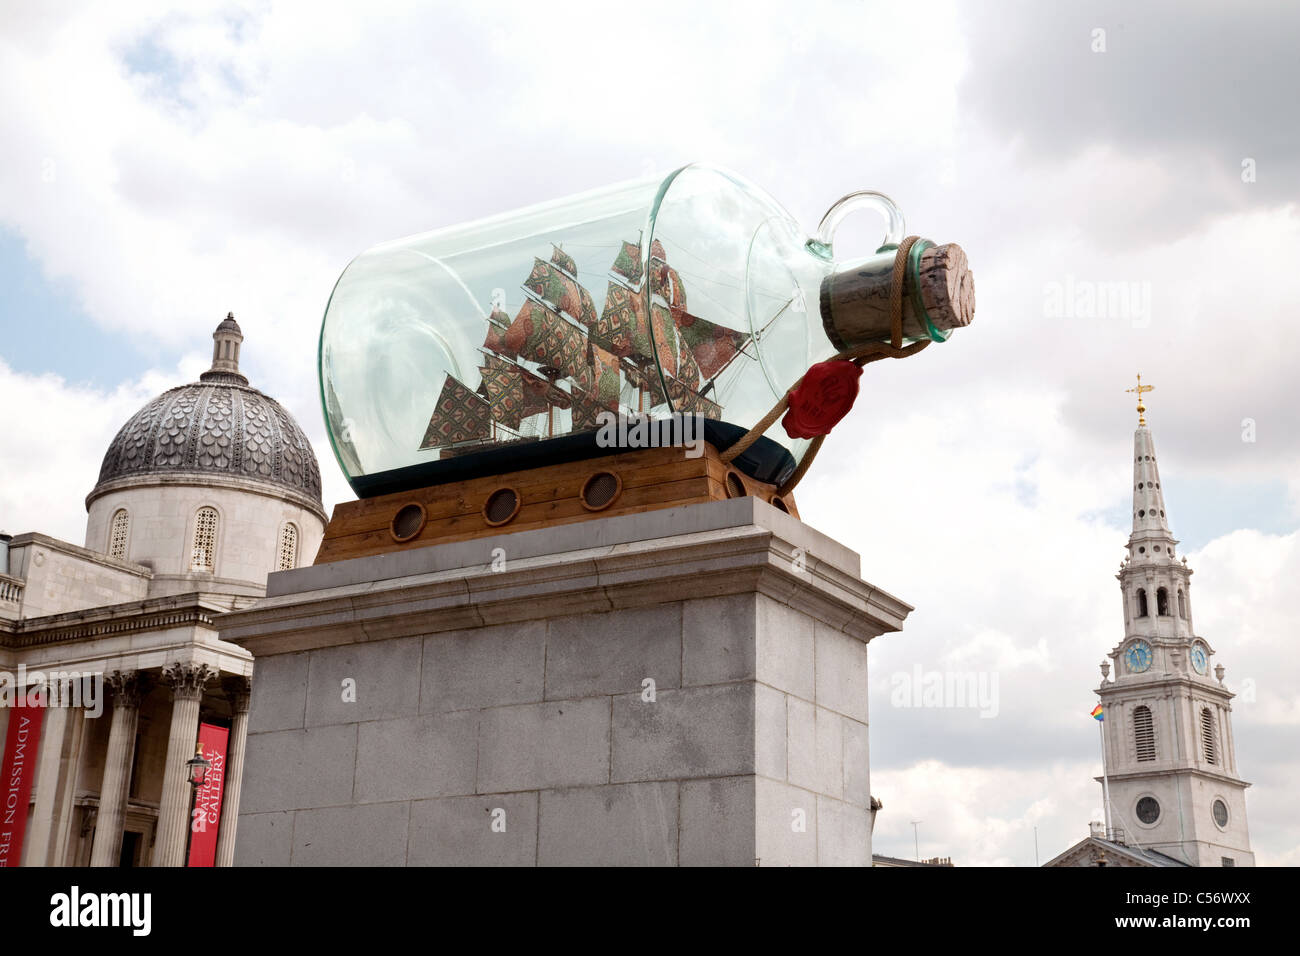 Un gran barco en una botella (insignia de Nelsons 'Victoria' por Yinka Shonibare) en el cuarto plinto, Trafalgar Square, Londres, Gran Bretaña. Foto de stock